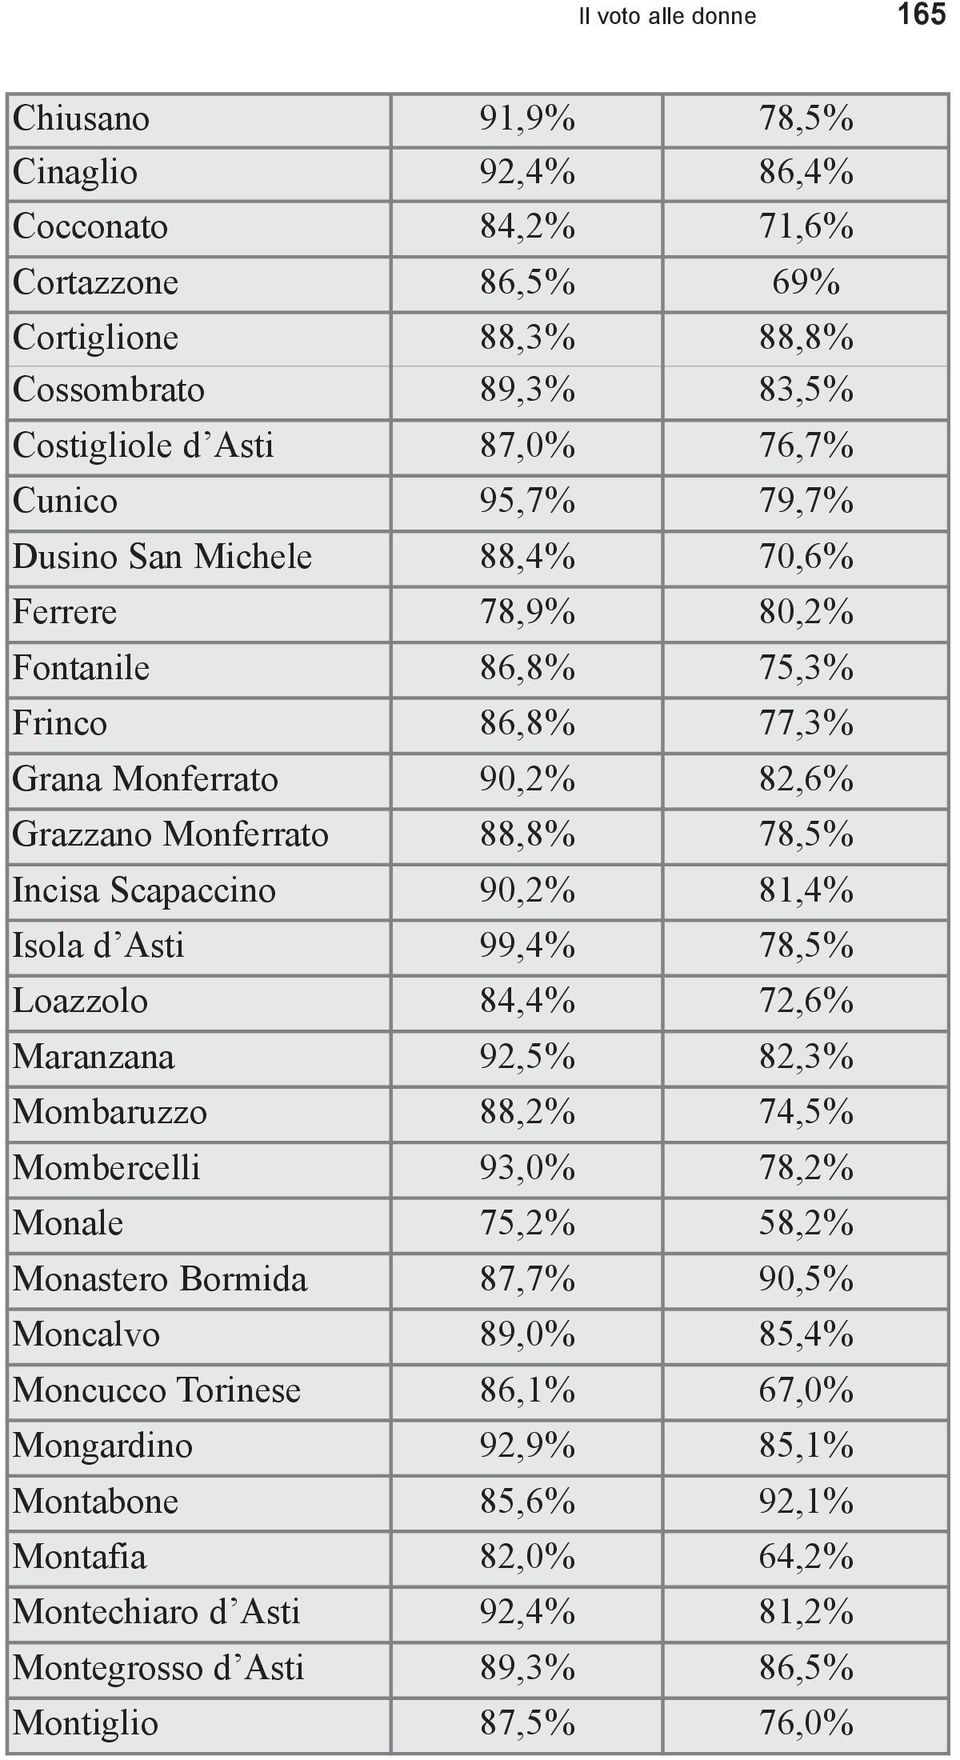 Scapaccino 90,2% 81,4% Isola d Asti 99,4% 78,5% Loazzolo 84,4% 72,6% Maranzana 92,5% 82,3% Mombaruzzo 88,2% 74,5% Mombercelli 93,0% 78,2% Monale 75,2% 58,2% Monastero Bormida 87,7% 90,5%